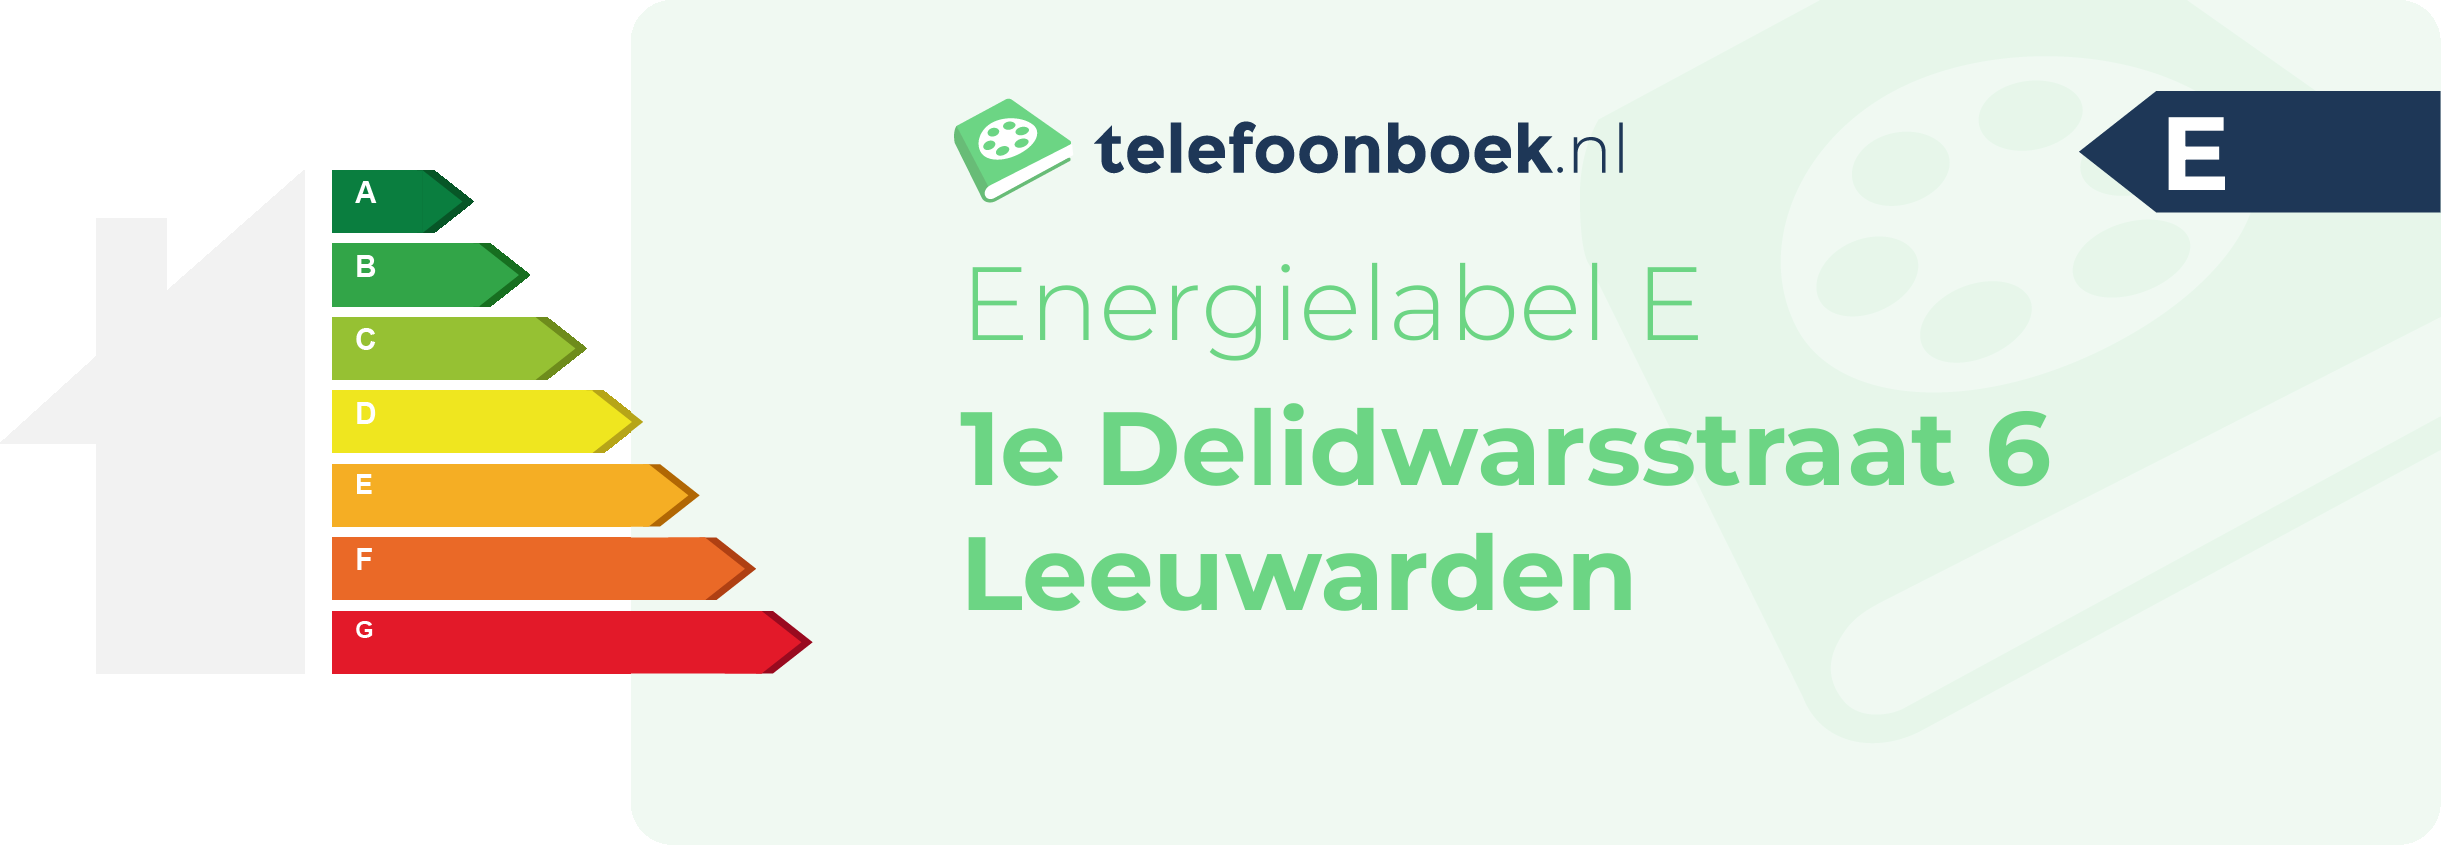 Energielabel 1e Delidwarsstraat 6 Leeuwarden